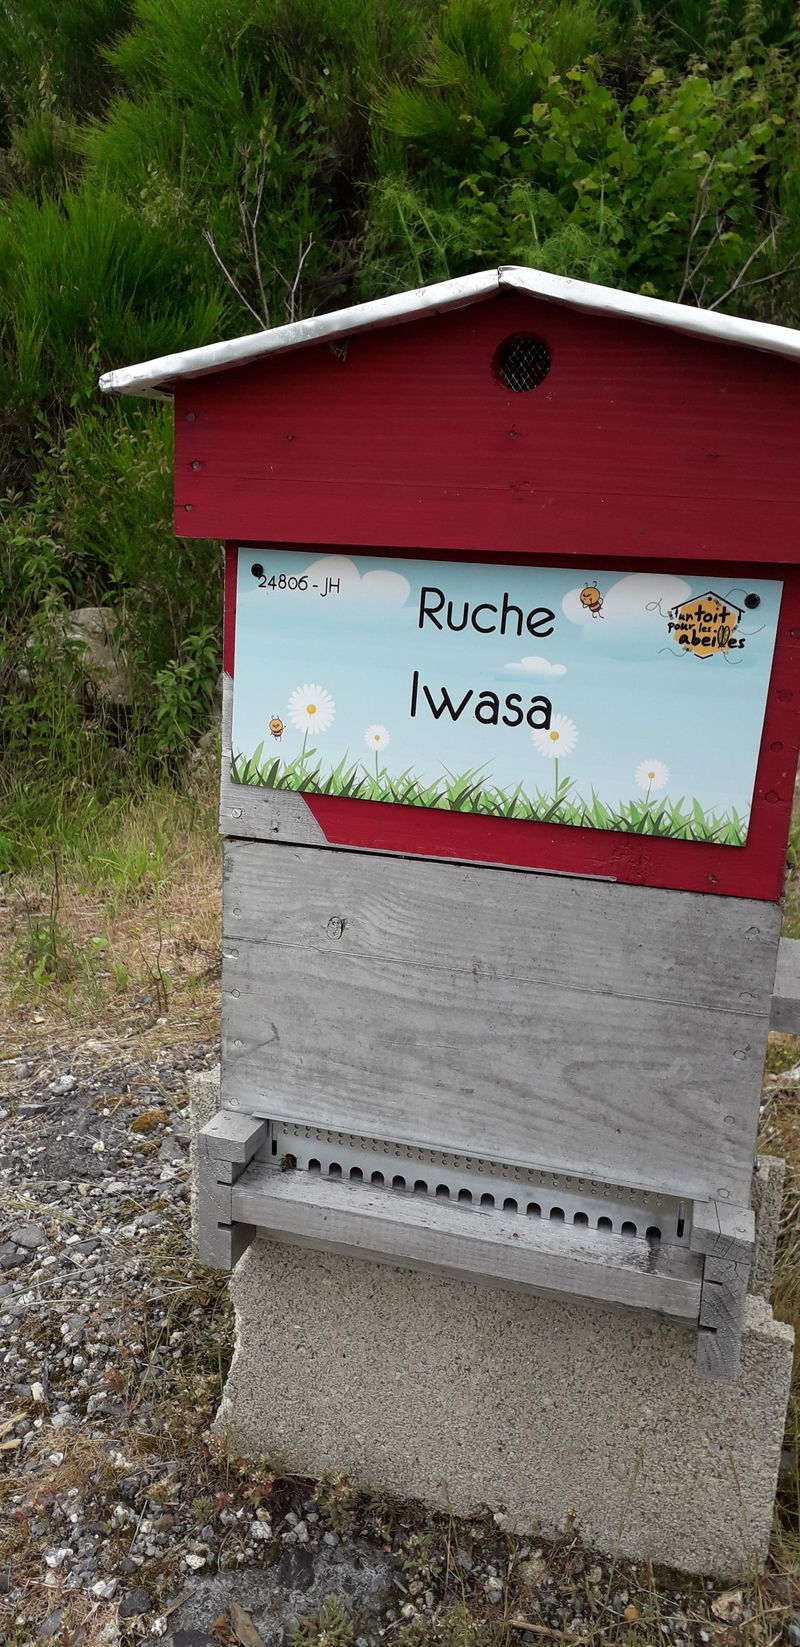 La ruche Iwasa